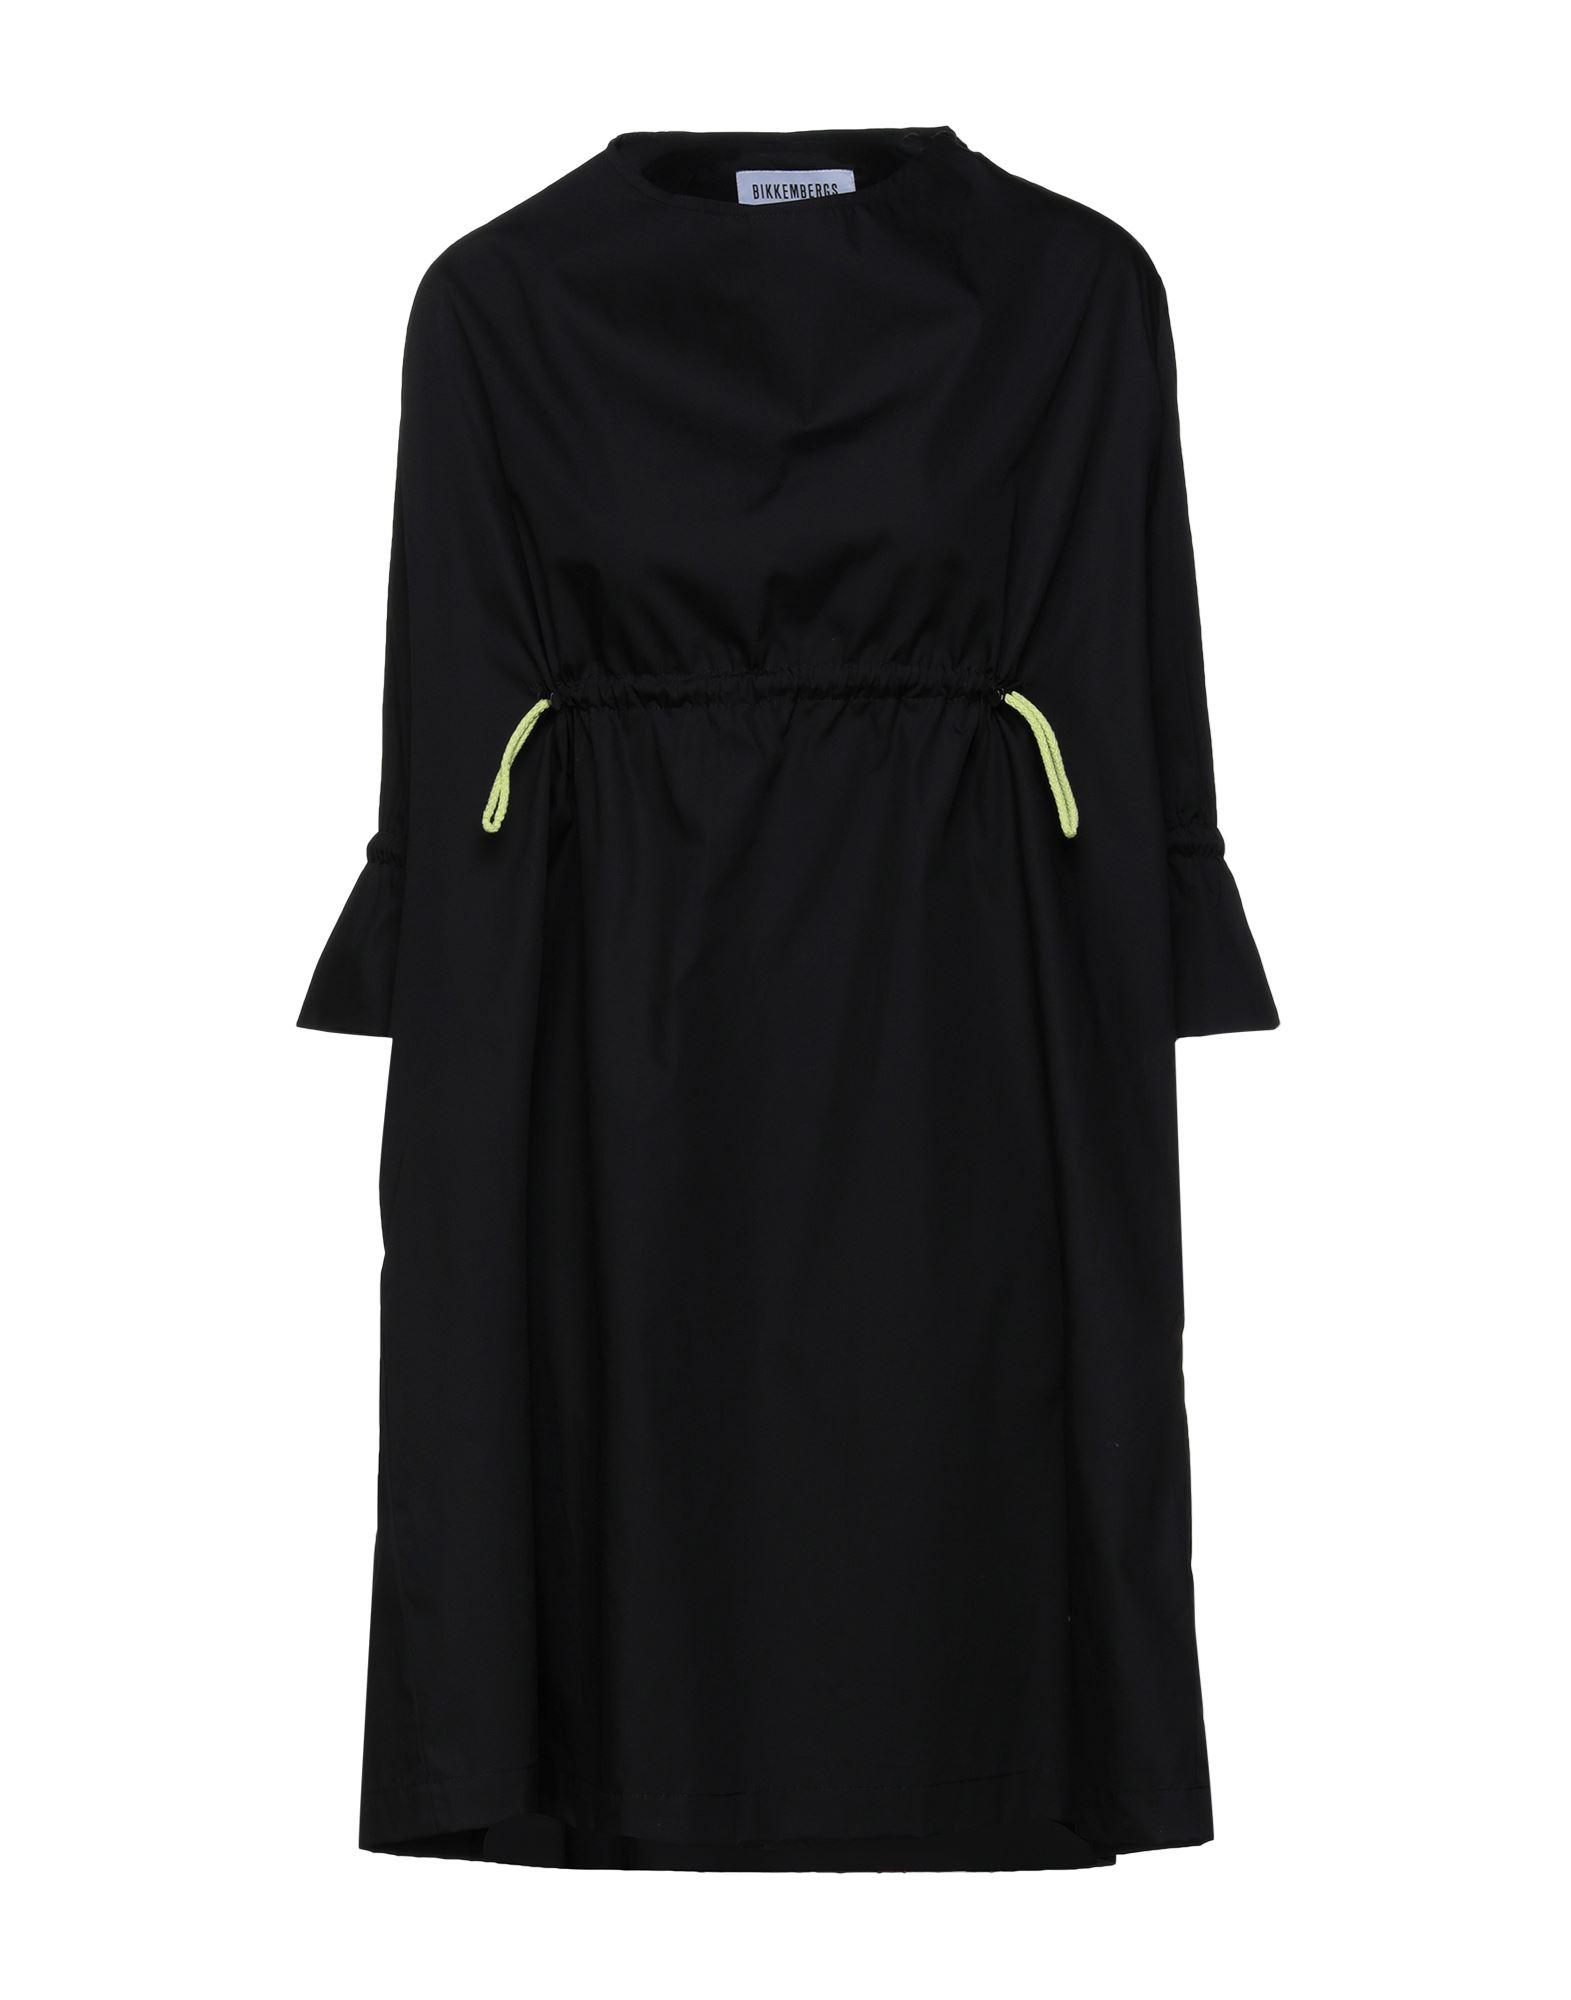 Bikkembergs Short Dress in Black | Lyst